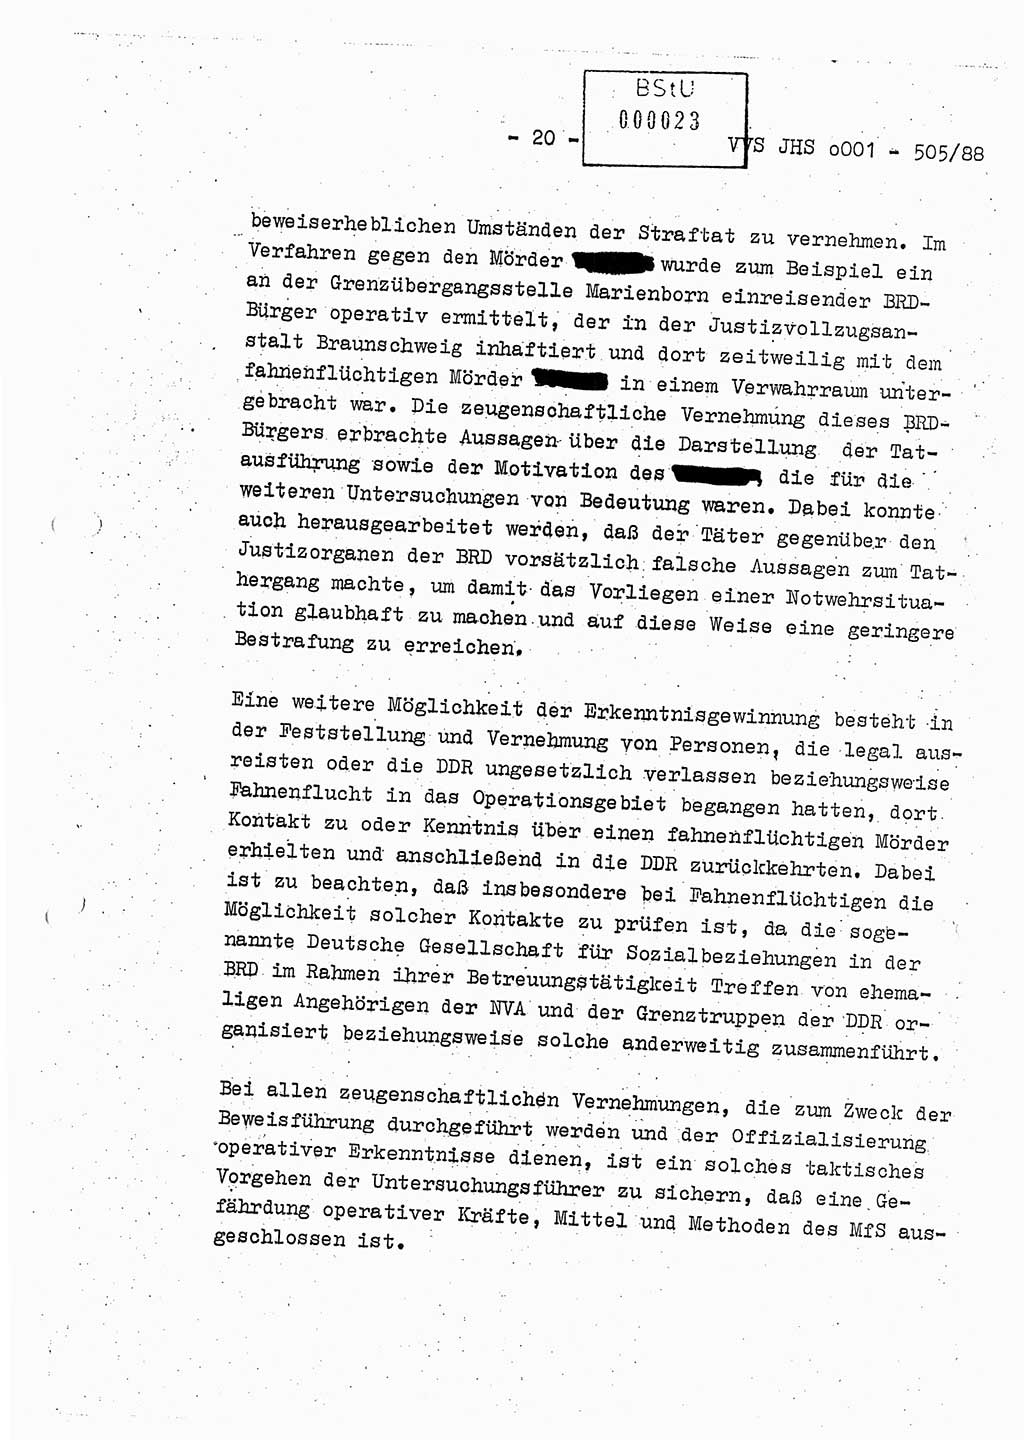 Diplomarbeit Leutnant Frank Schulze (HA Ⅸ/9), Ministerium für Staatssicherheit (MfS) [Deutsche Demokratische Republik (DDR)], Juristische Hochschule (JHS), Vertrauliche Verschlußsache (VVS) o001-505/88, Potsdam 1988, Seite 20 (Dipl.-Arb. MfS DDR JHS VVS o001-505/88 1988, S. 20)